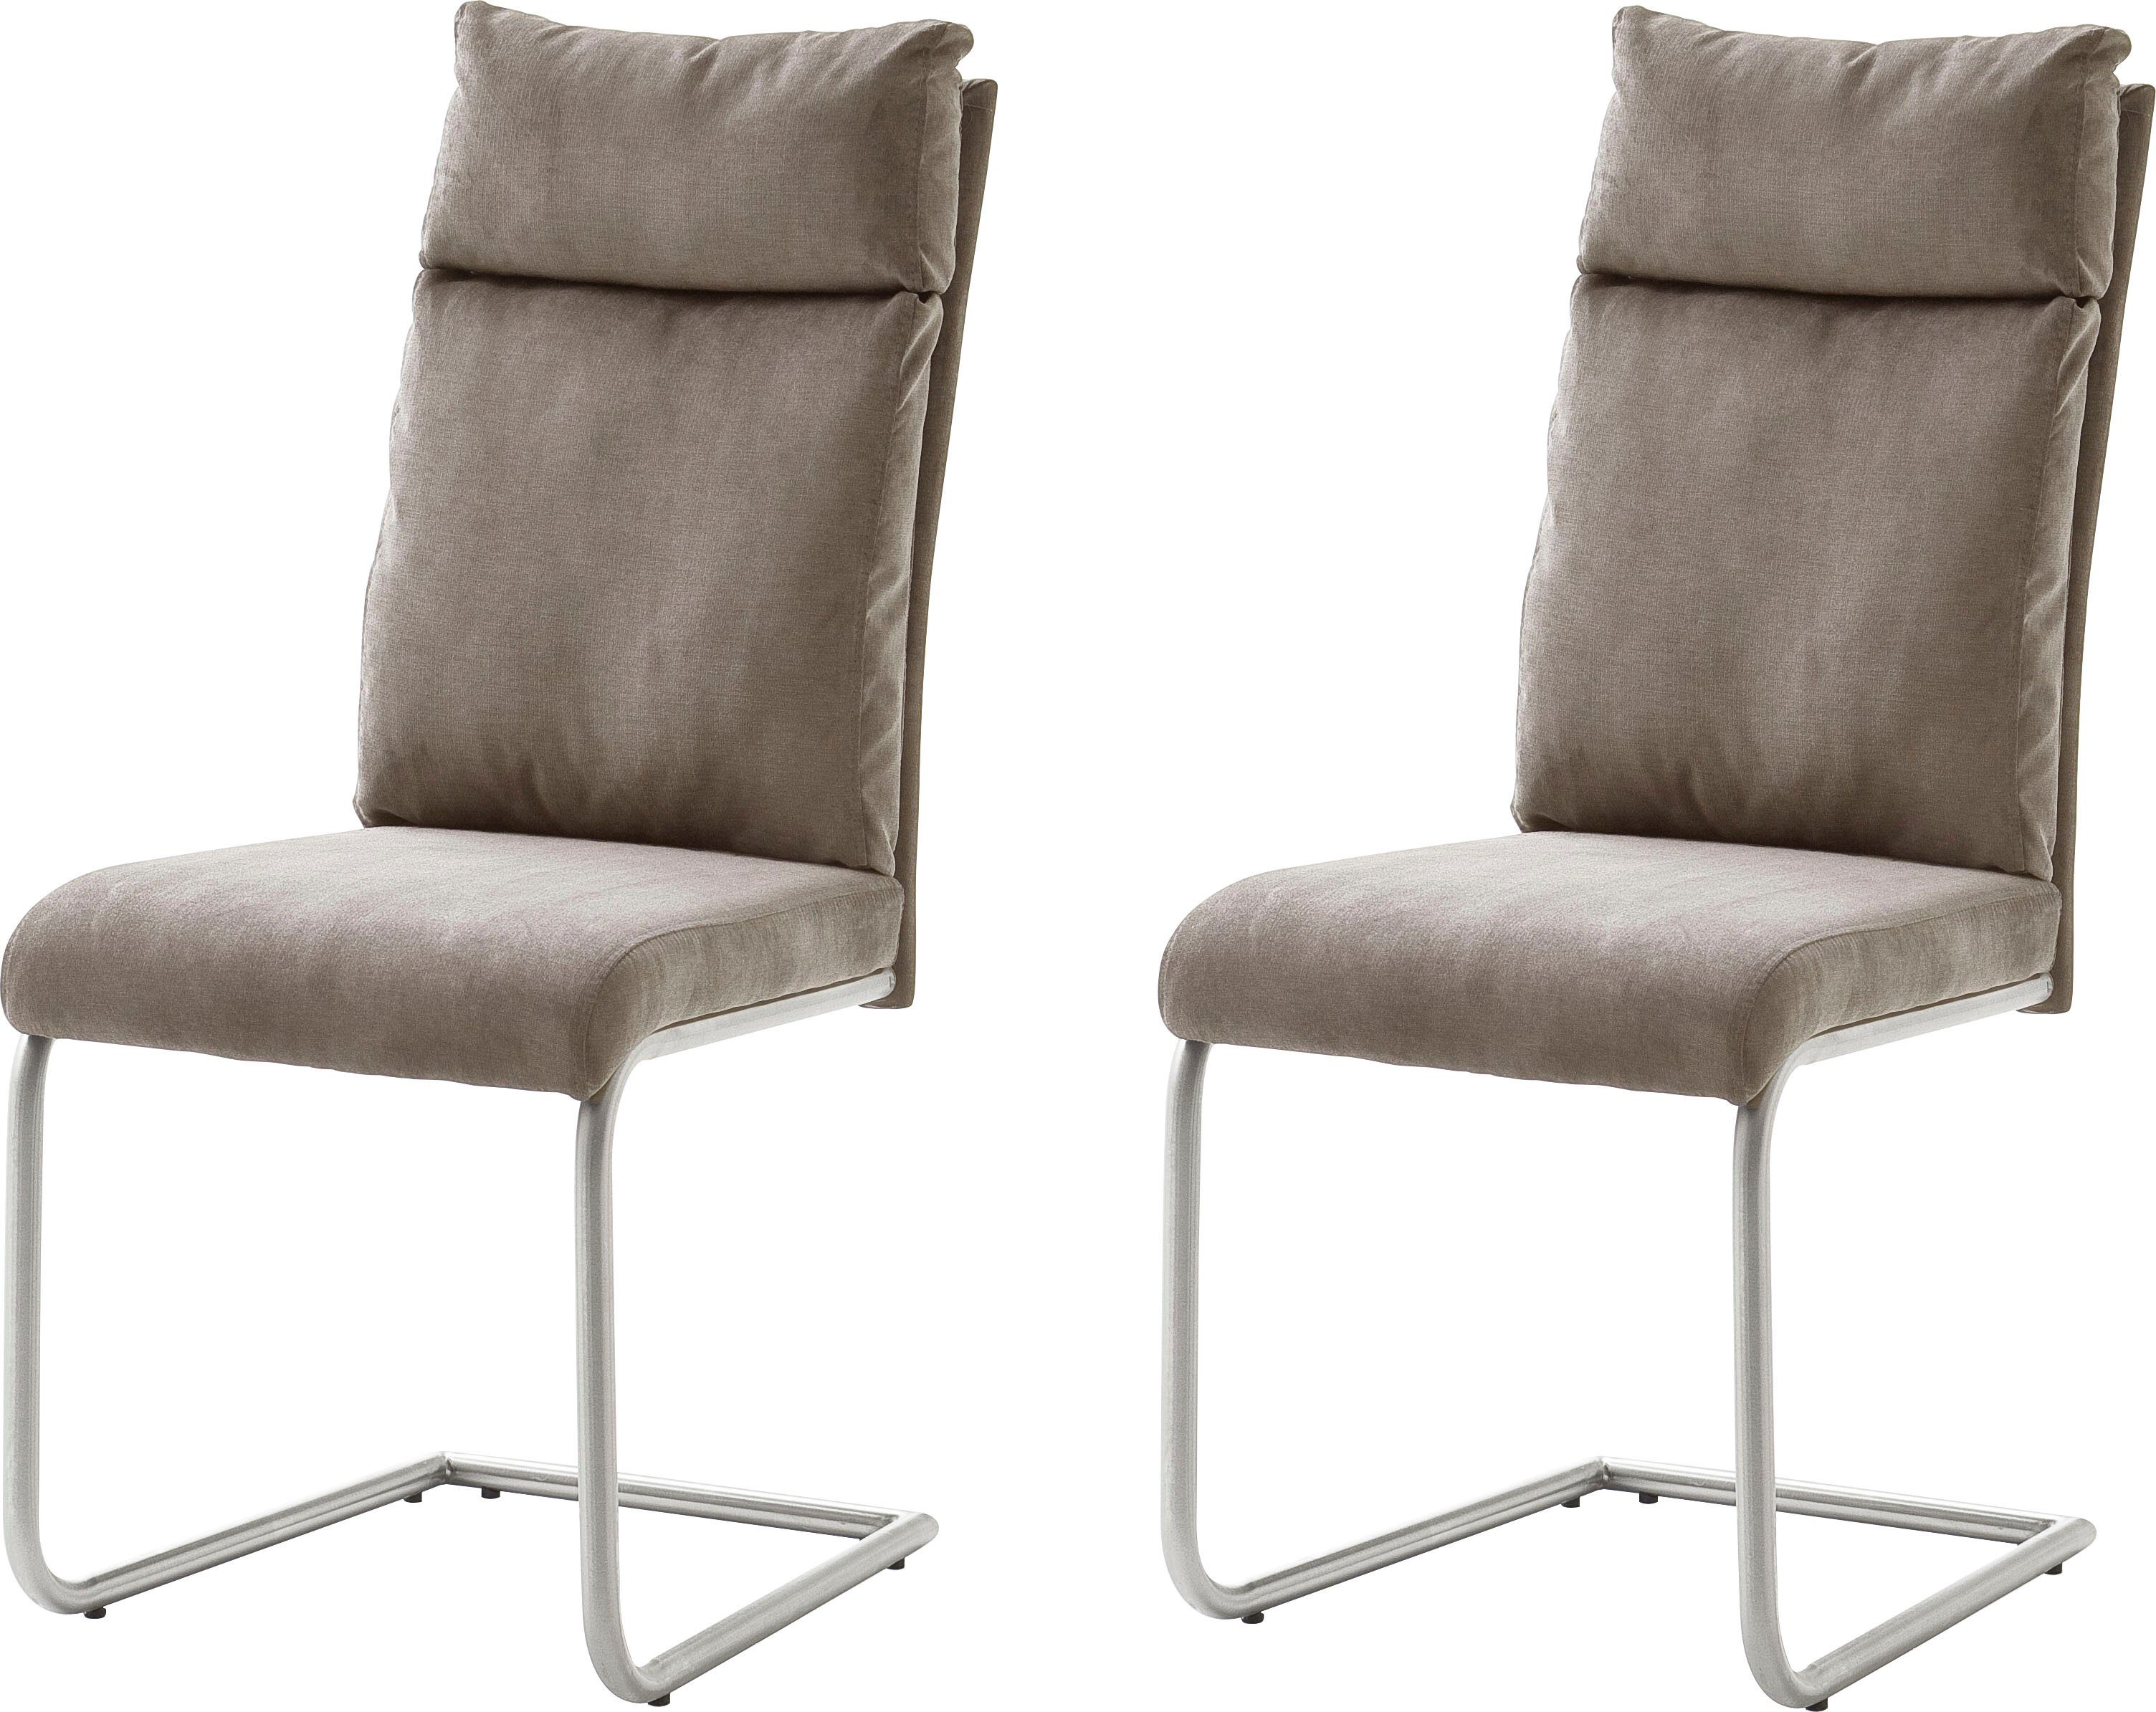 MCA furniture Vrijdragende stoel Pia Stoel belastbaar tot 120 kg, kussen-look (set, 2 stuks)